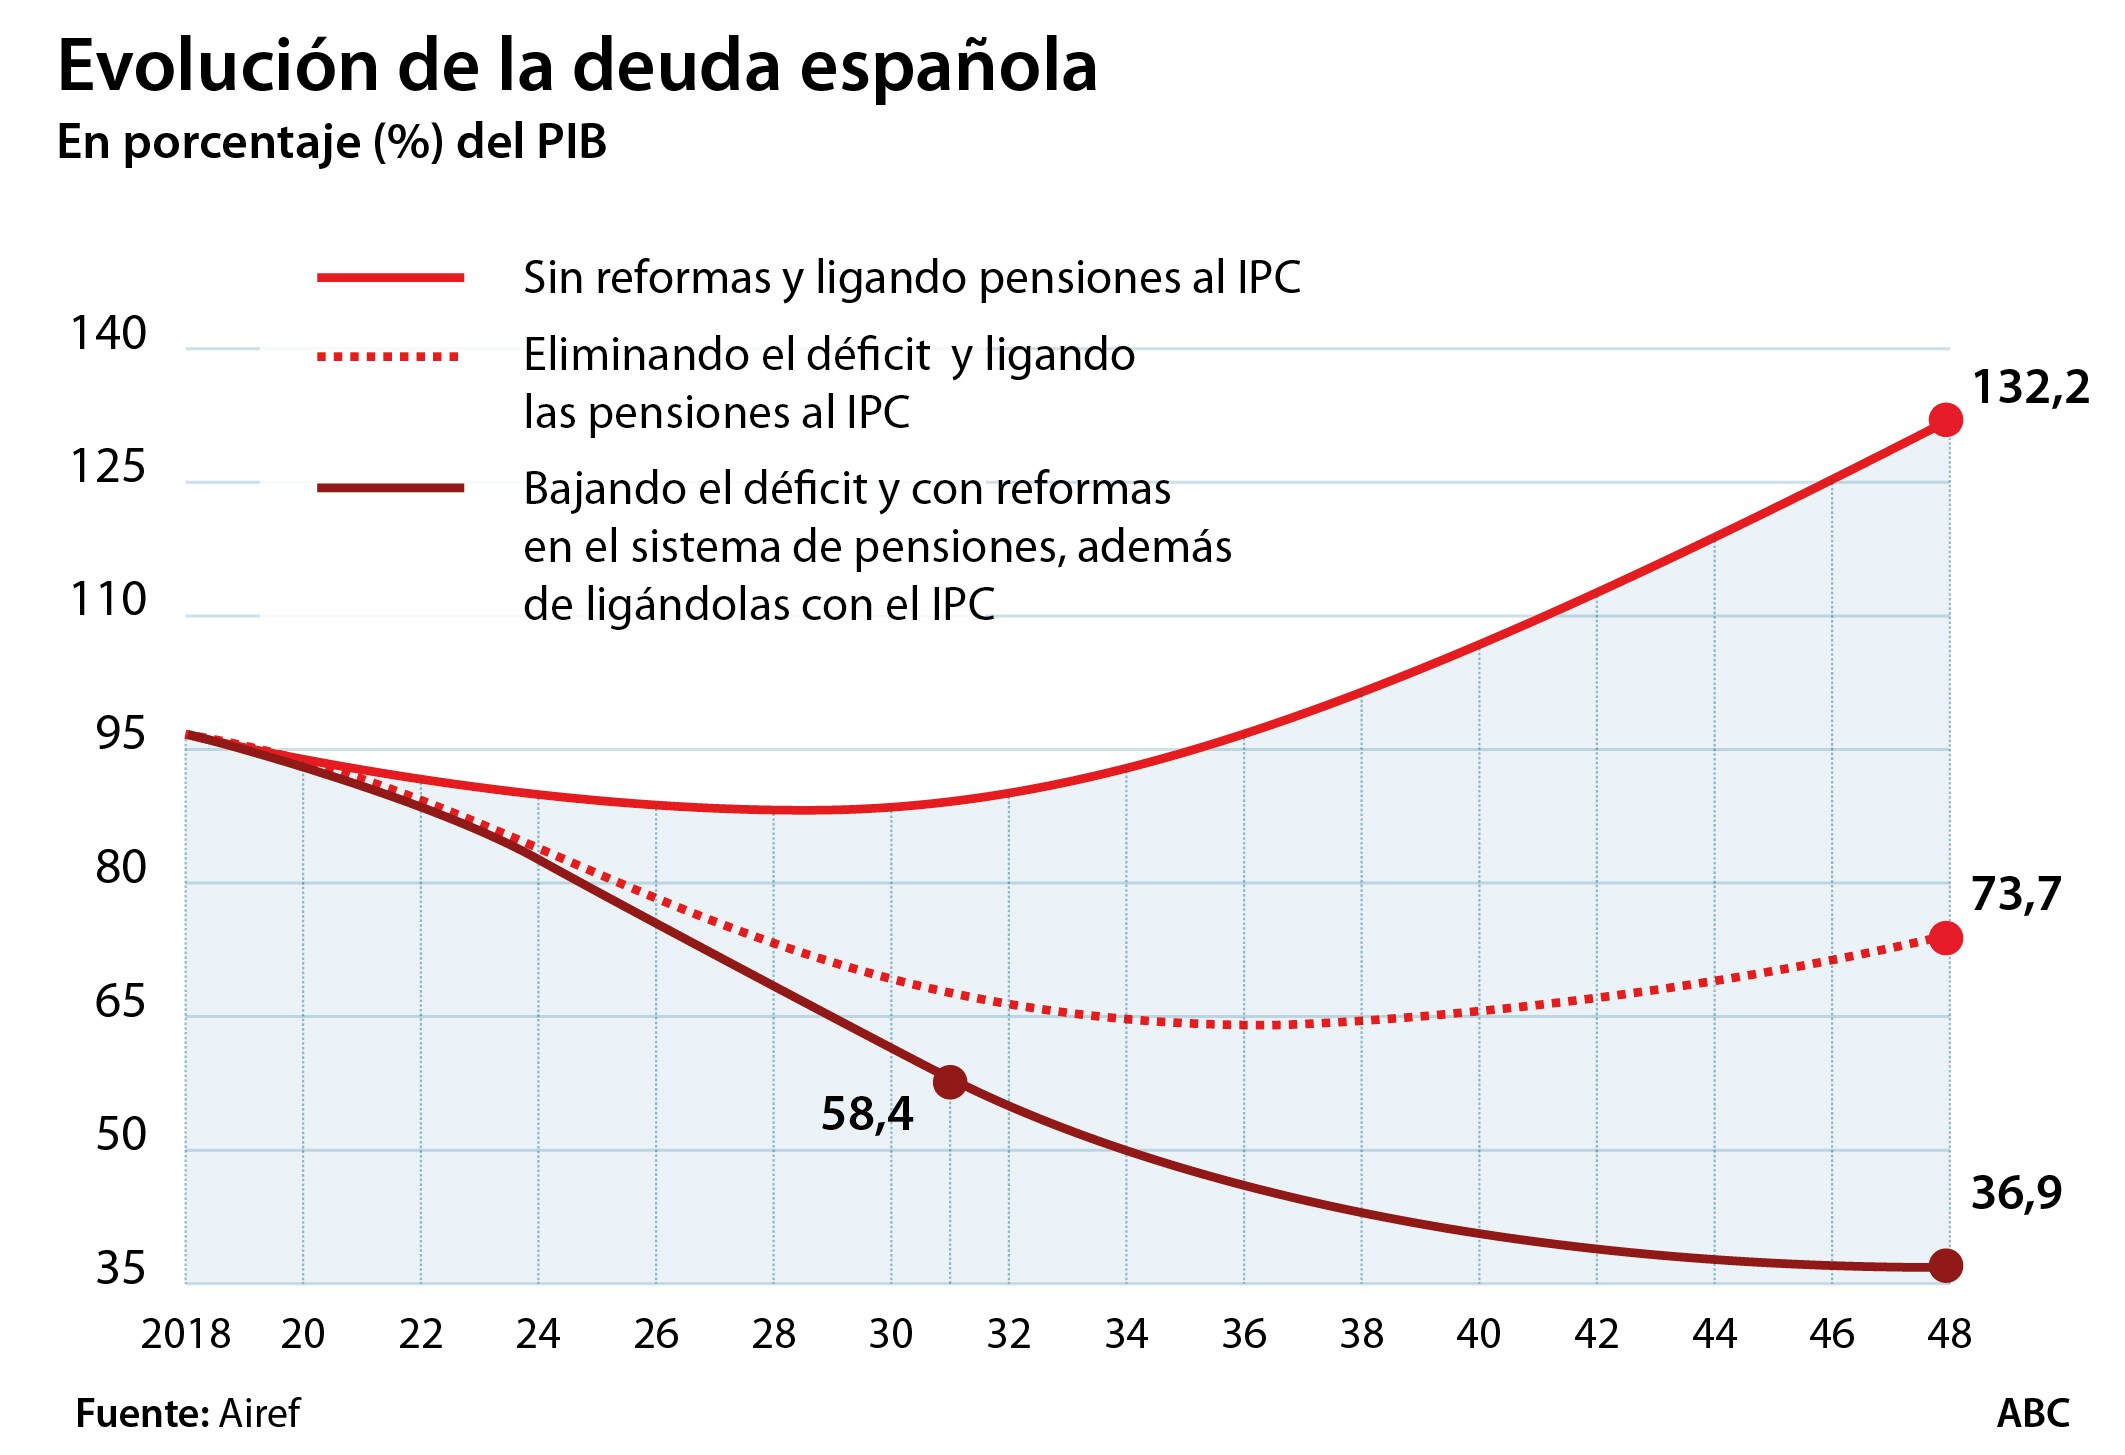 Solo ligar las pensiones al IPC sin más reformas dispararía la deuda en 30 años al 132% del PIB